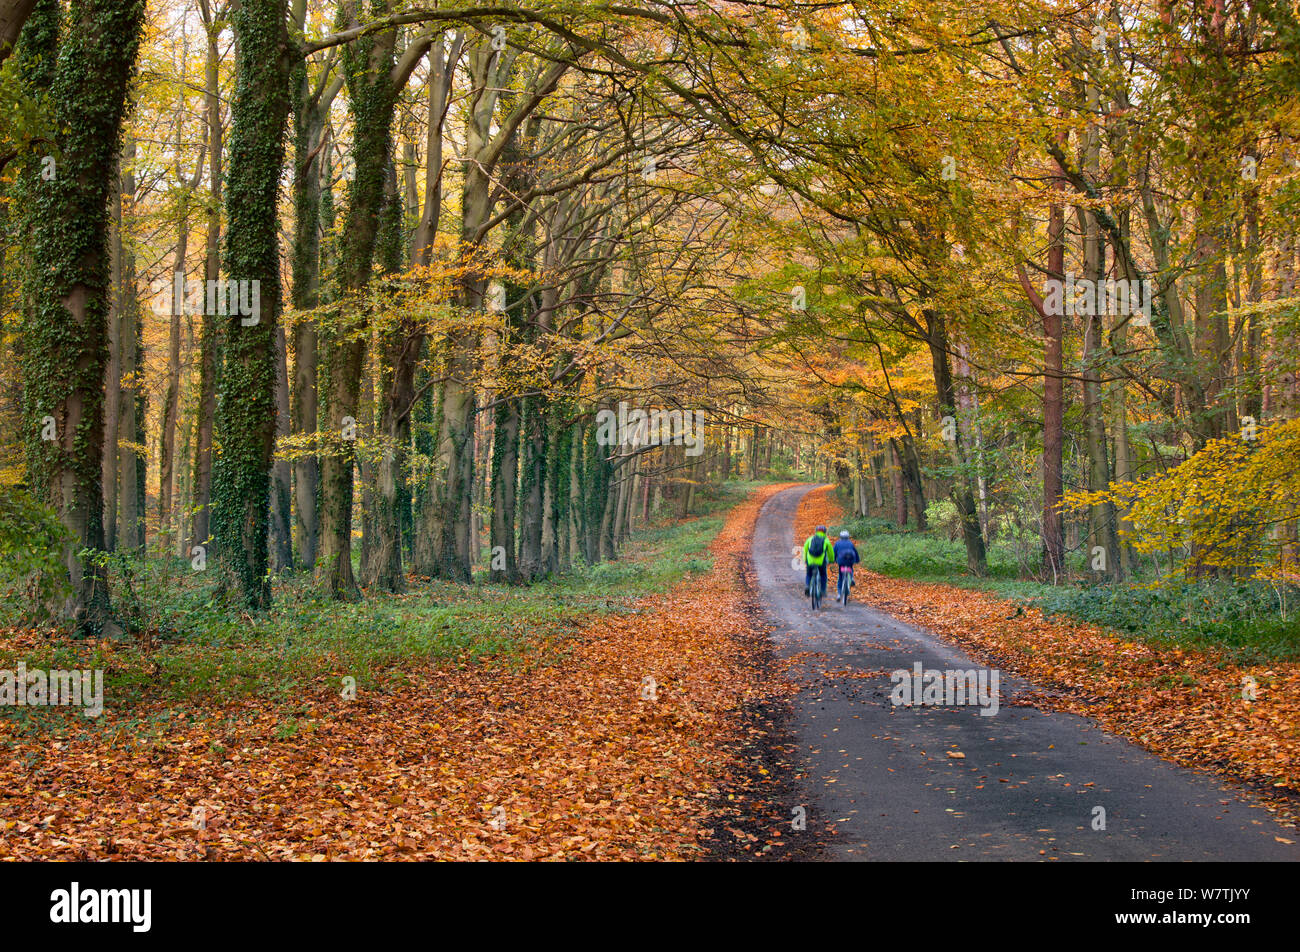 Deux personnes à vélo sur une voie à travers des bois d'automne, Holkham, Norfolk, Angleterre, Royaume-Uni, novembre. Banque D'Images